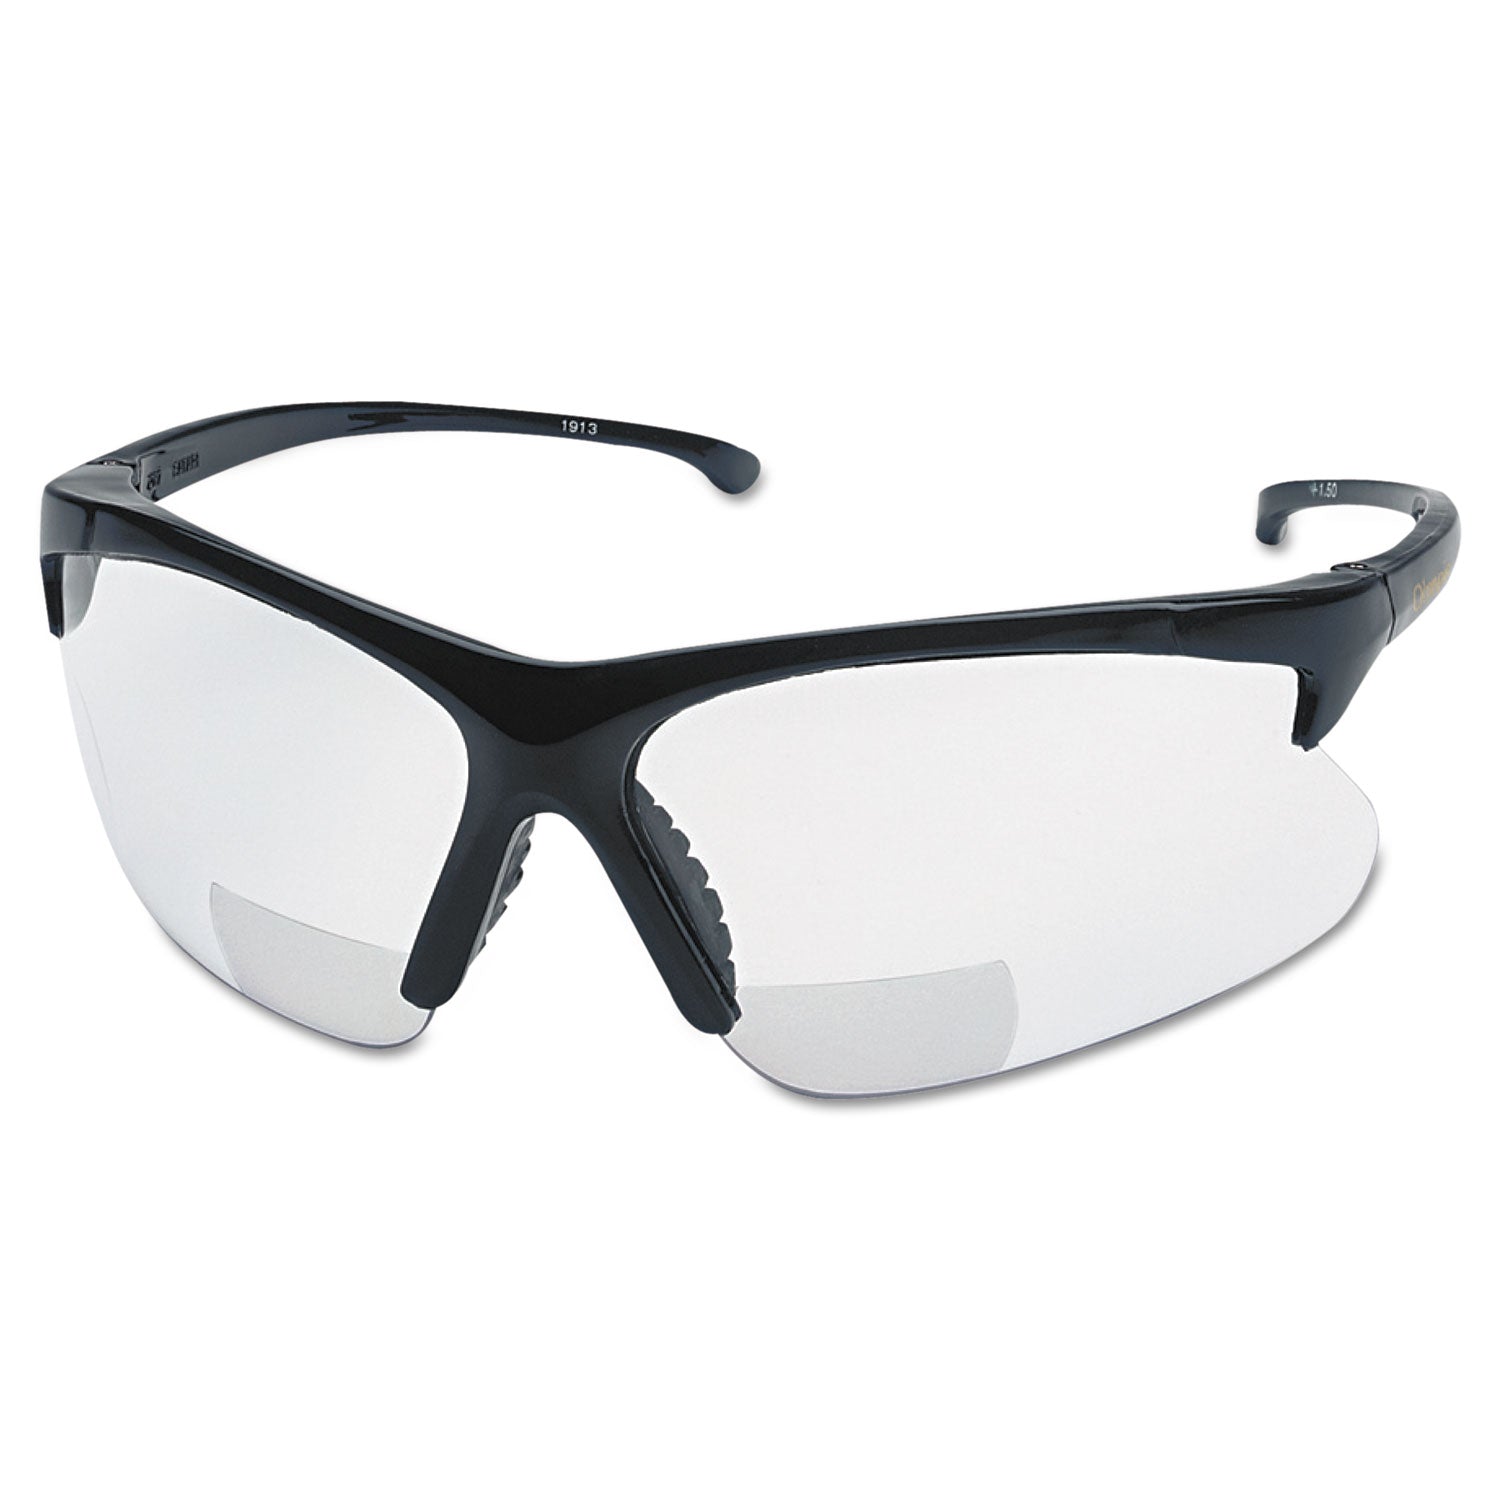 v60-30-06-reader-safety-eyewear-black-frame-clear-lens_smw19878 - 1